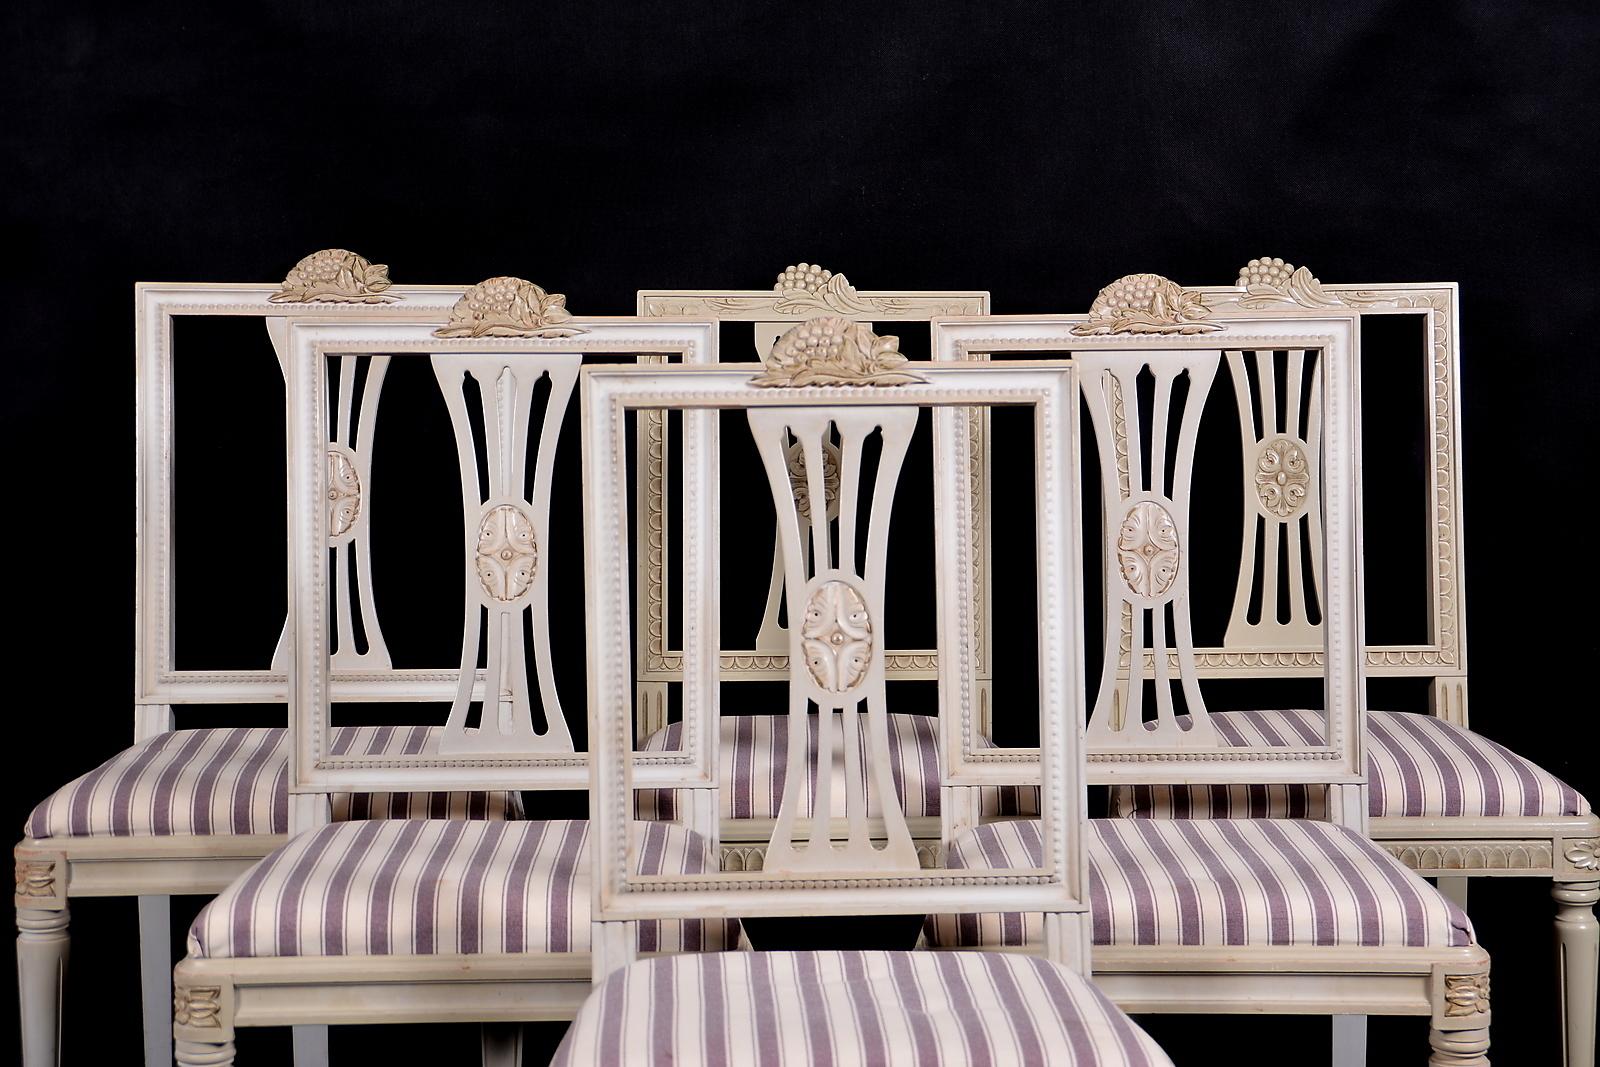 Ungewöhnlicher Satz von 6 gustavianischen Lindome-Esszimmerstühlen in gutem strukturellem Zustand mit fein geschnitzten Details in Grau mit Fallensitzen. Hübsche kannelierte Beine und klassische Rosendetails am Rand. Diese Stühle werden nicht sehr